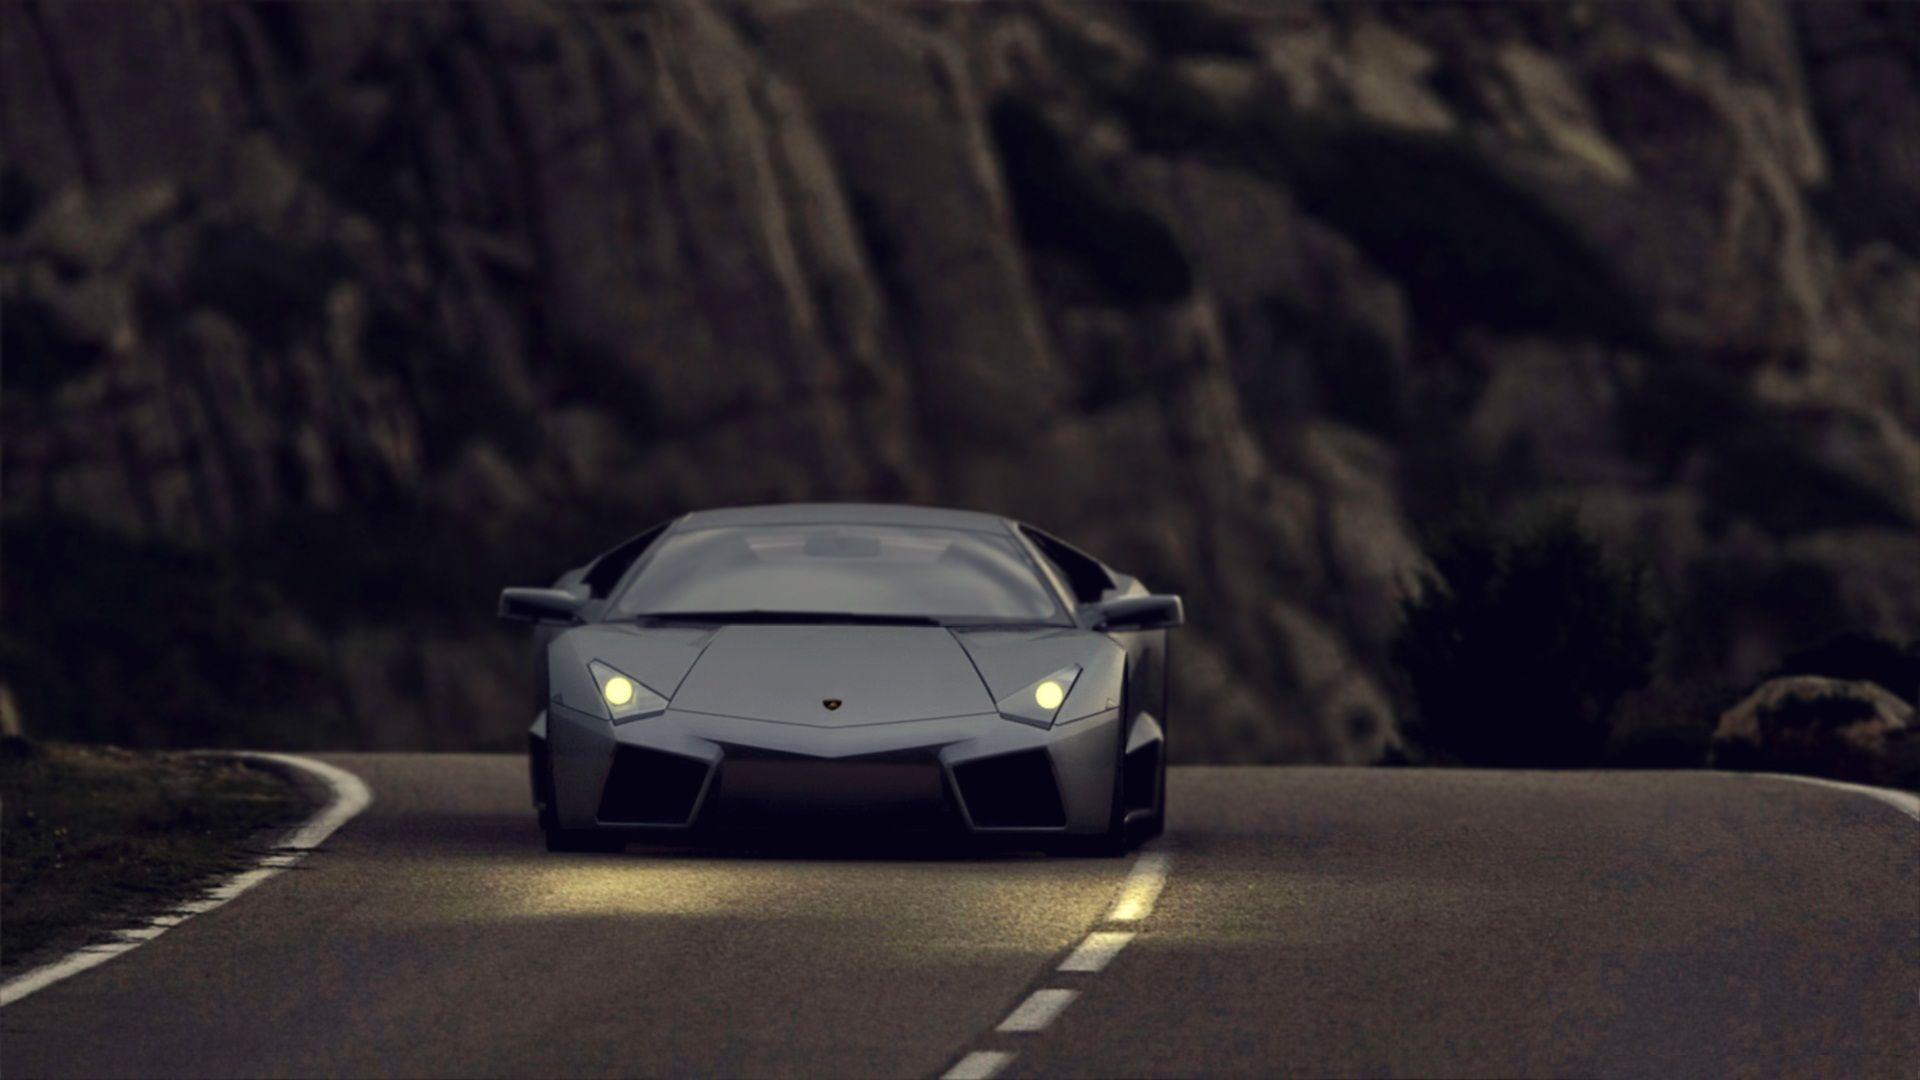 Hd Car Wallpaper Lamborghini